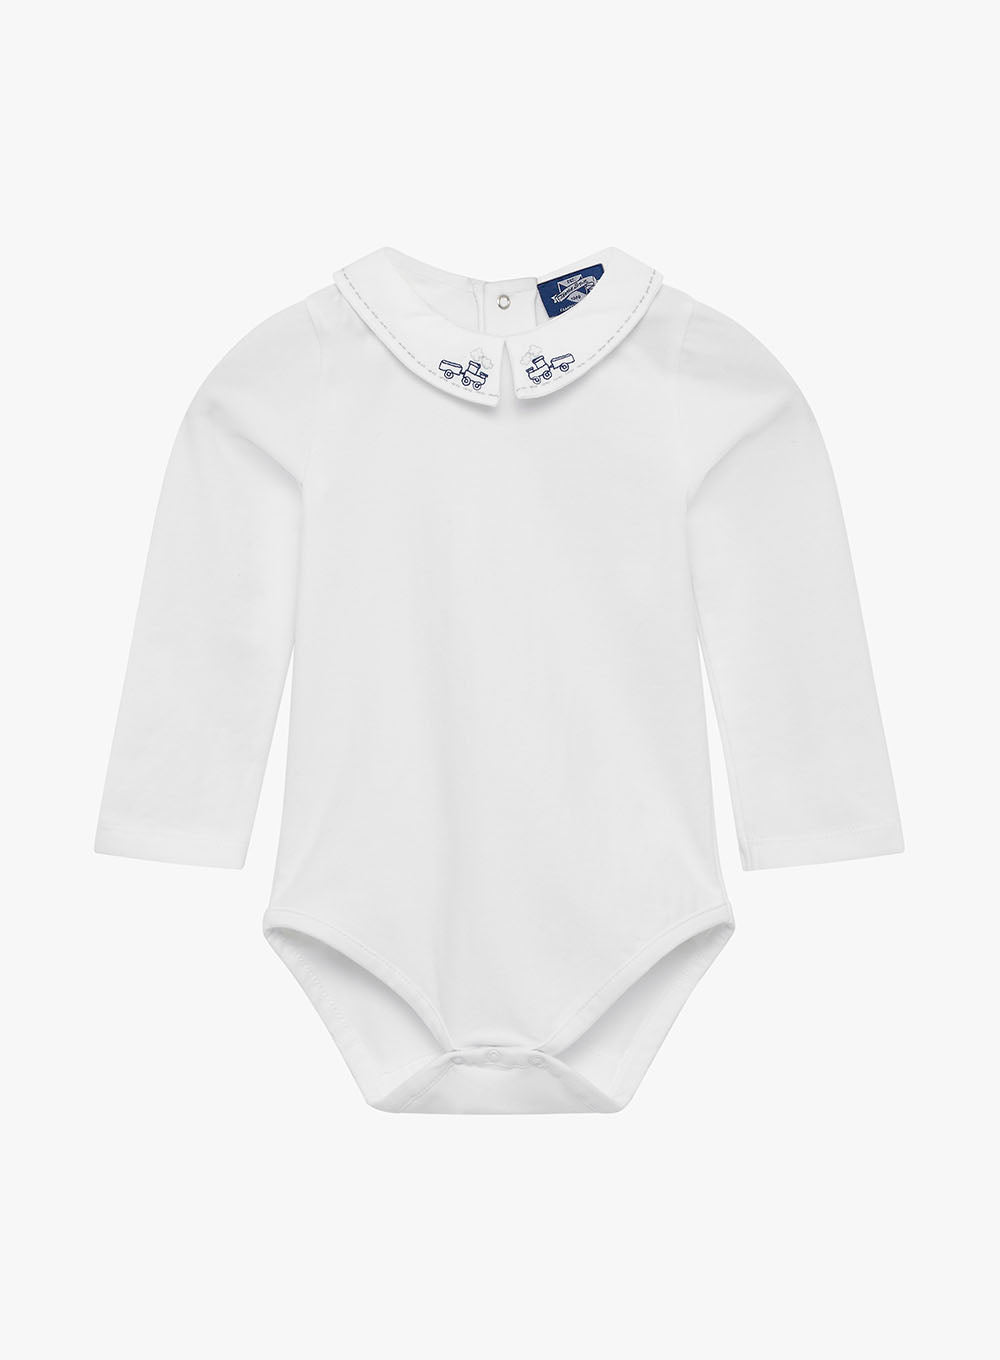 RISE LITTLE EARTHLING Baby's Long-Sleeve Bodysuit